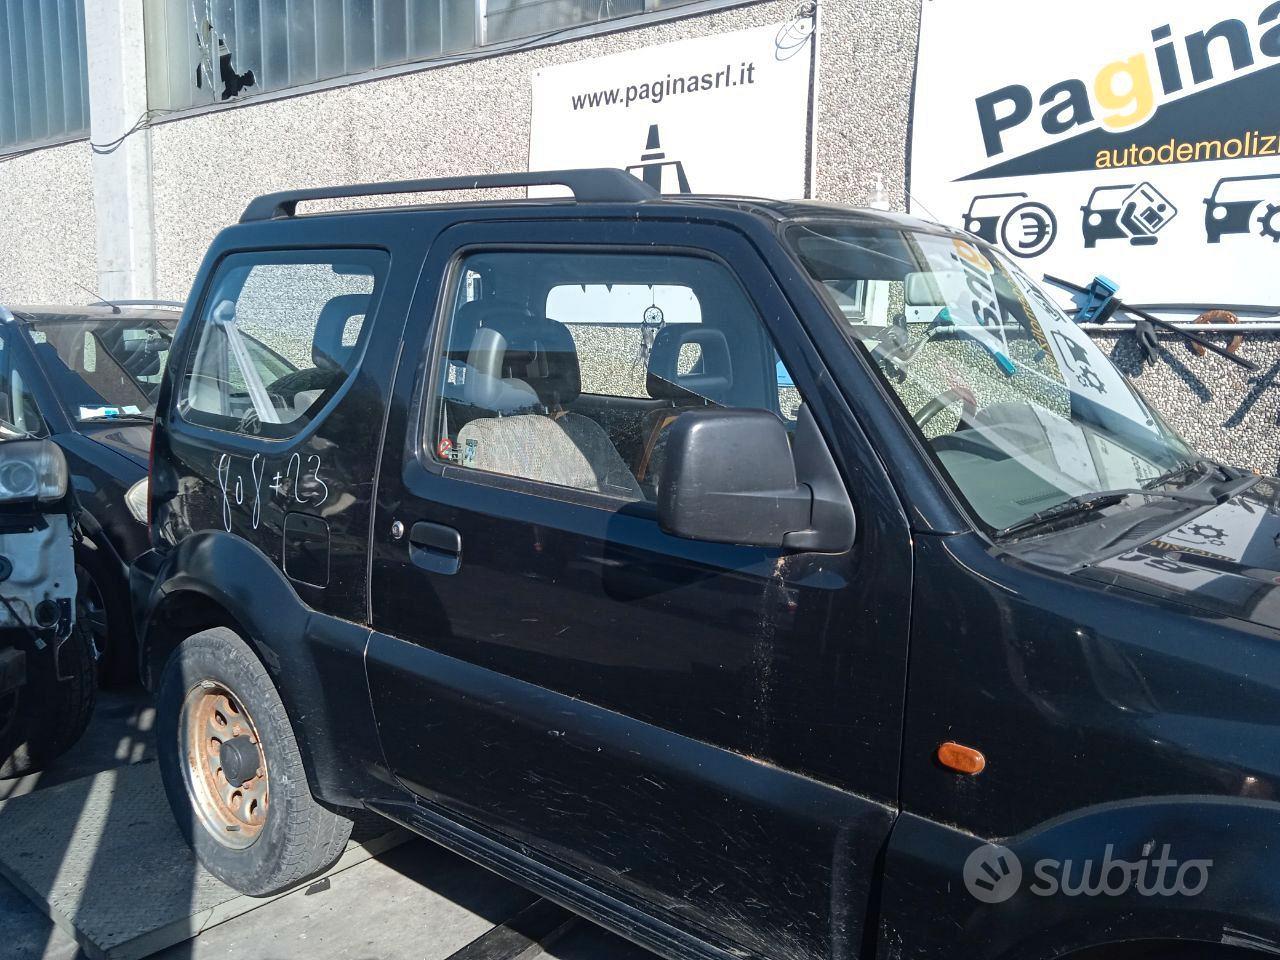 Subito - AUTODEMOLIZIONE PAGINA SRL - SUZUKI JIMNY 1.3 B 2000 G13BB PER  RICAMBI - Accessori Auto In vendita a Brescia